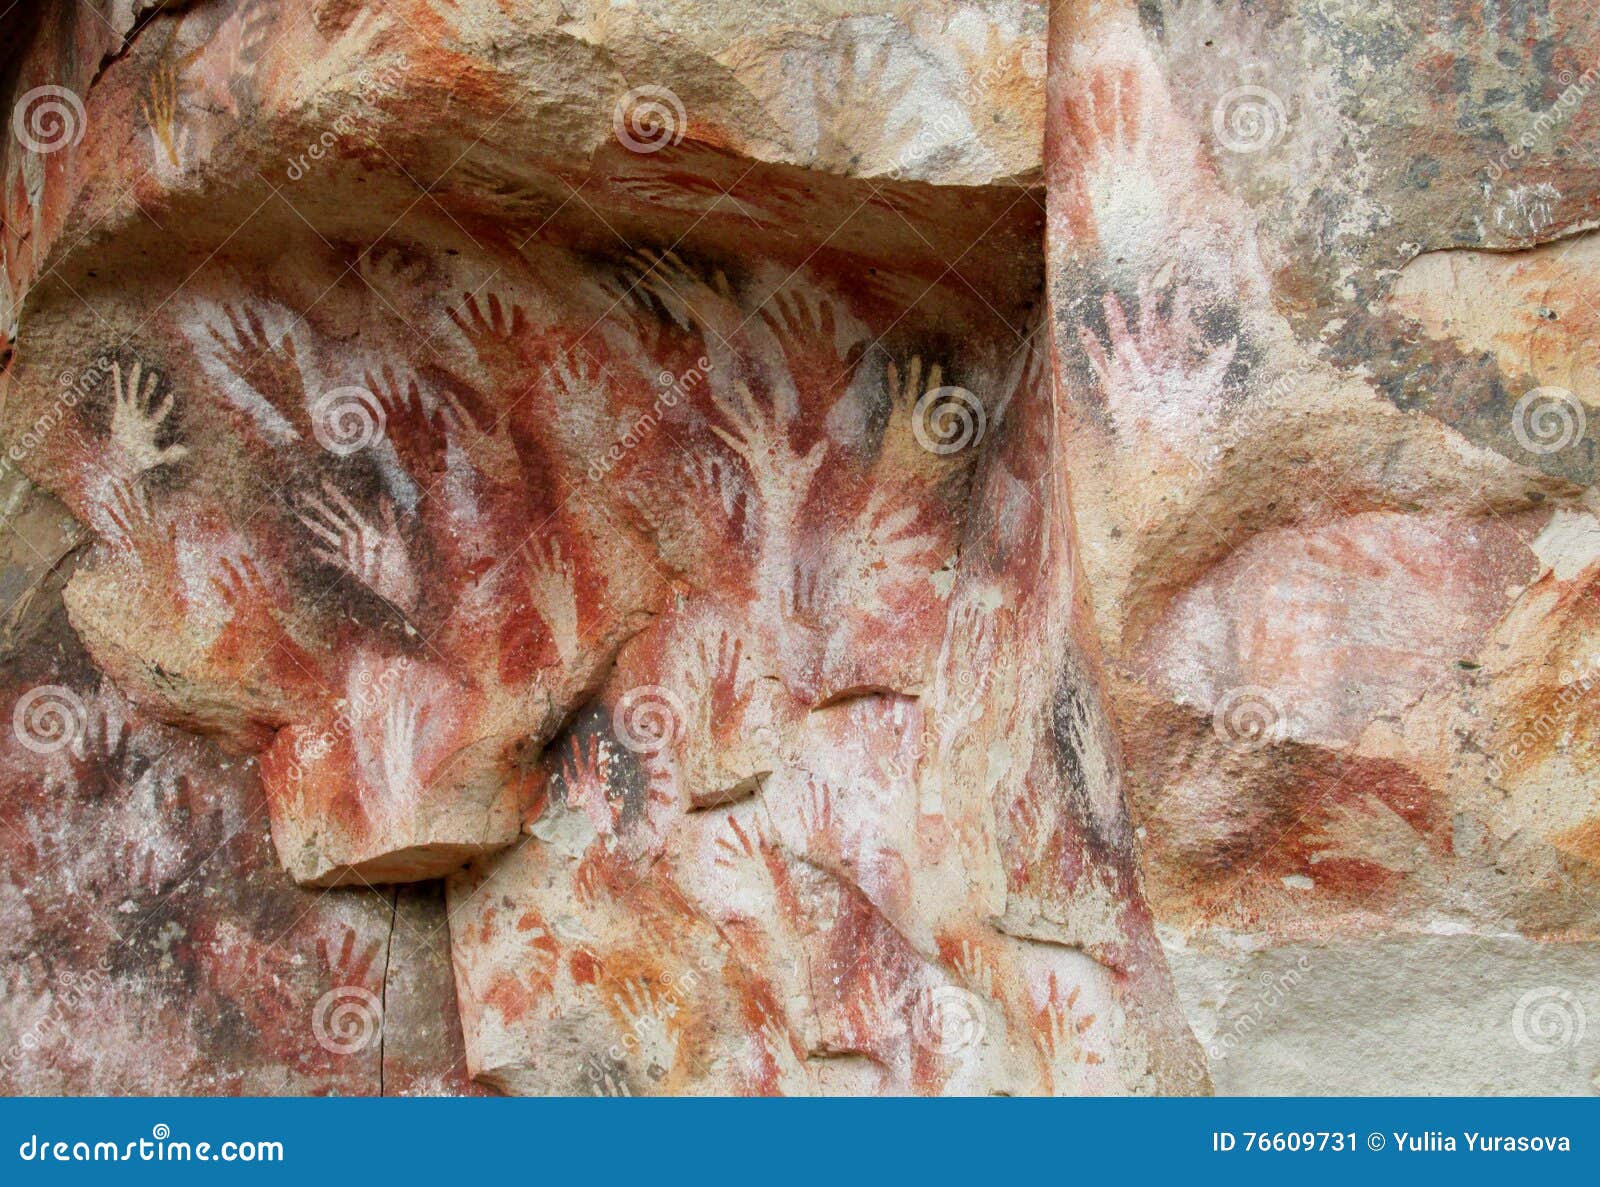 hand prints on a cave wall cueva de las manos